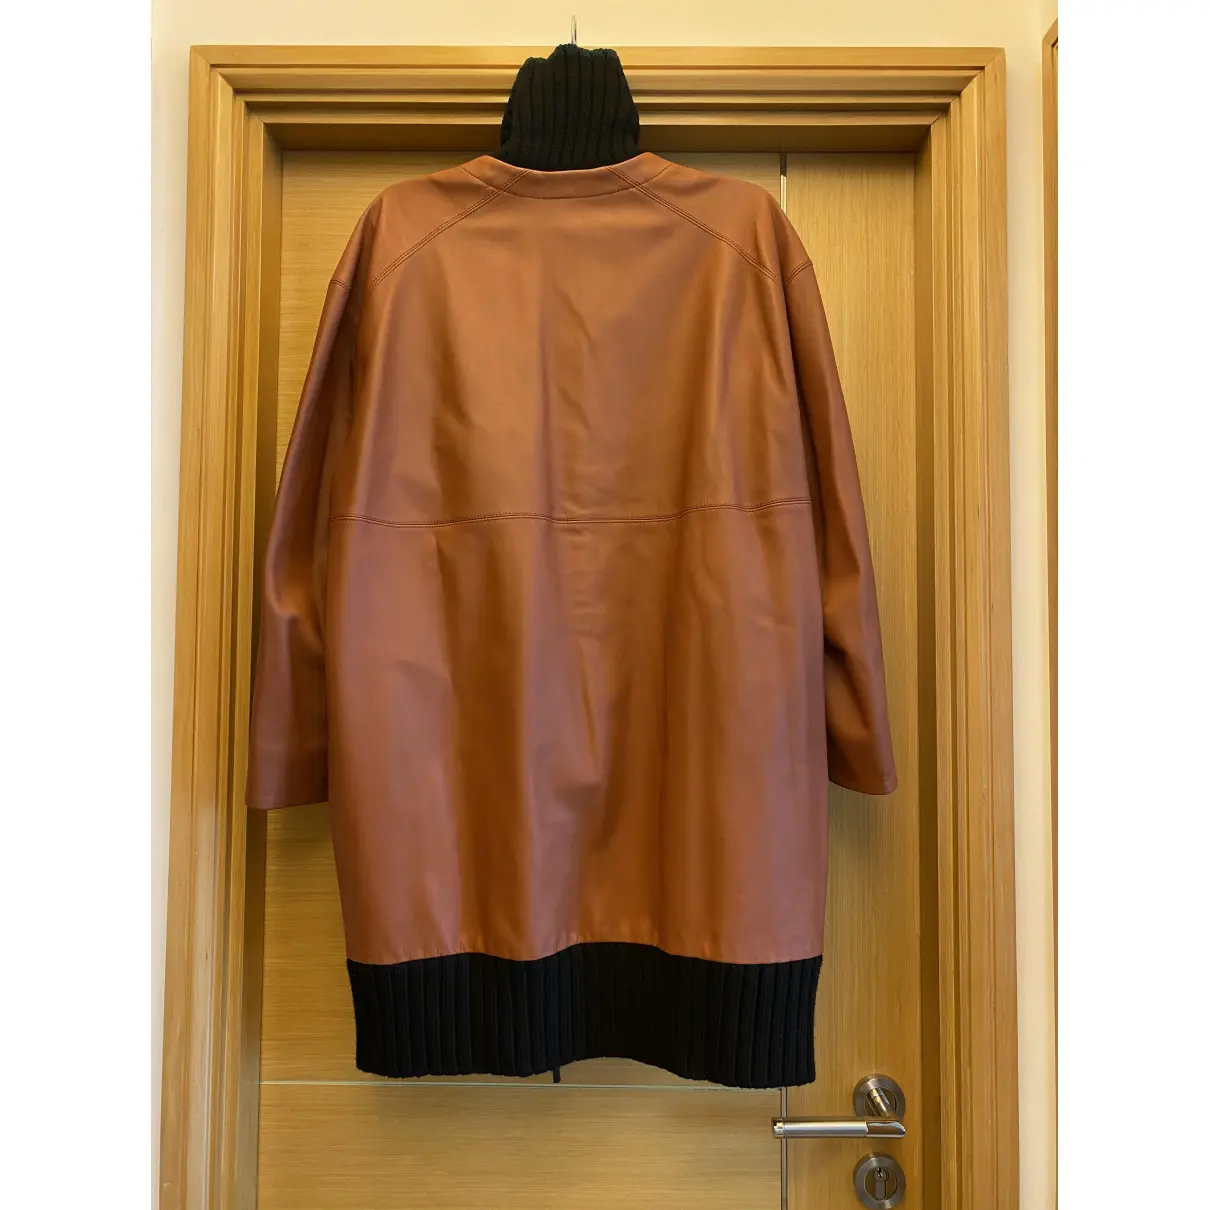 Leather coat Marni